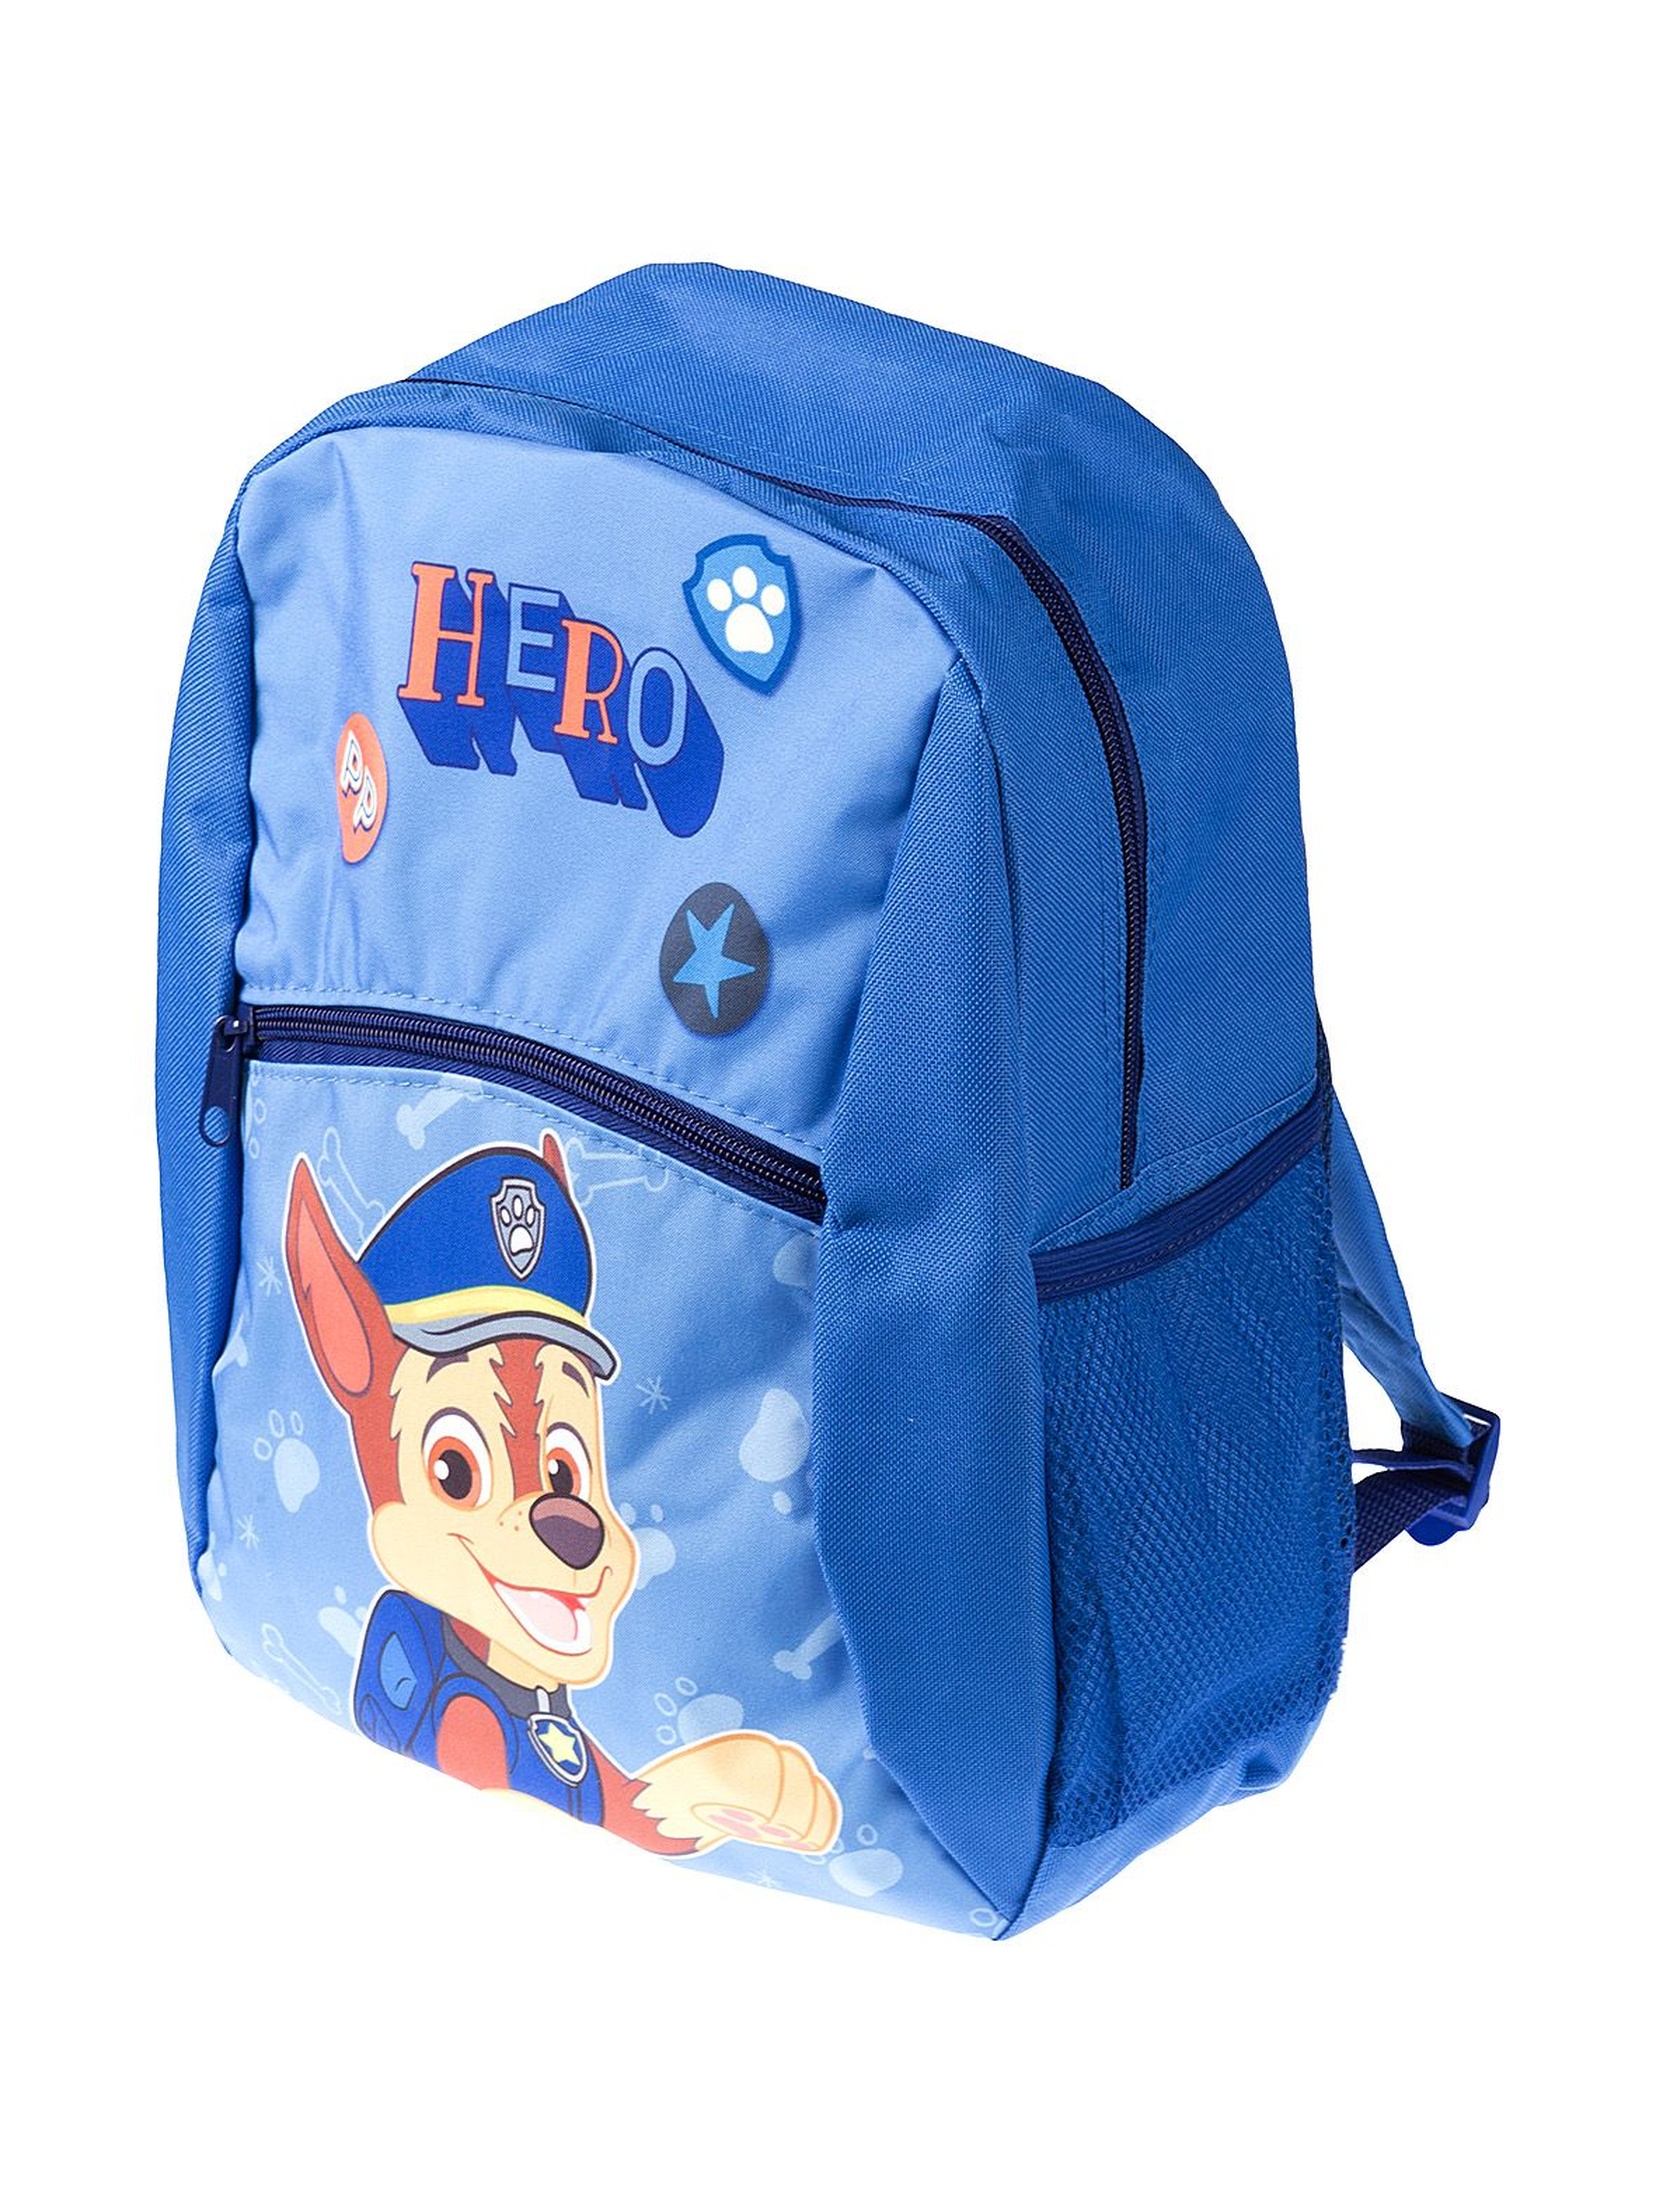 Plecak dla dziecka niebieski- Psi Patrol